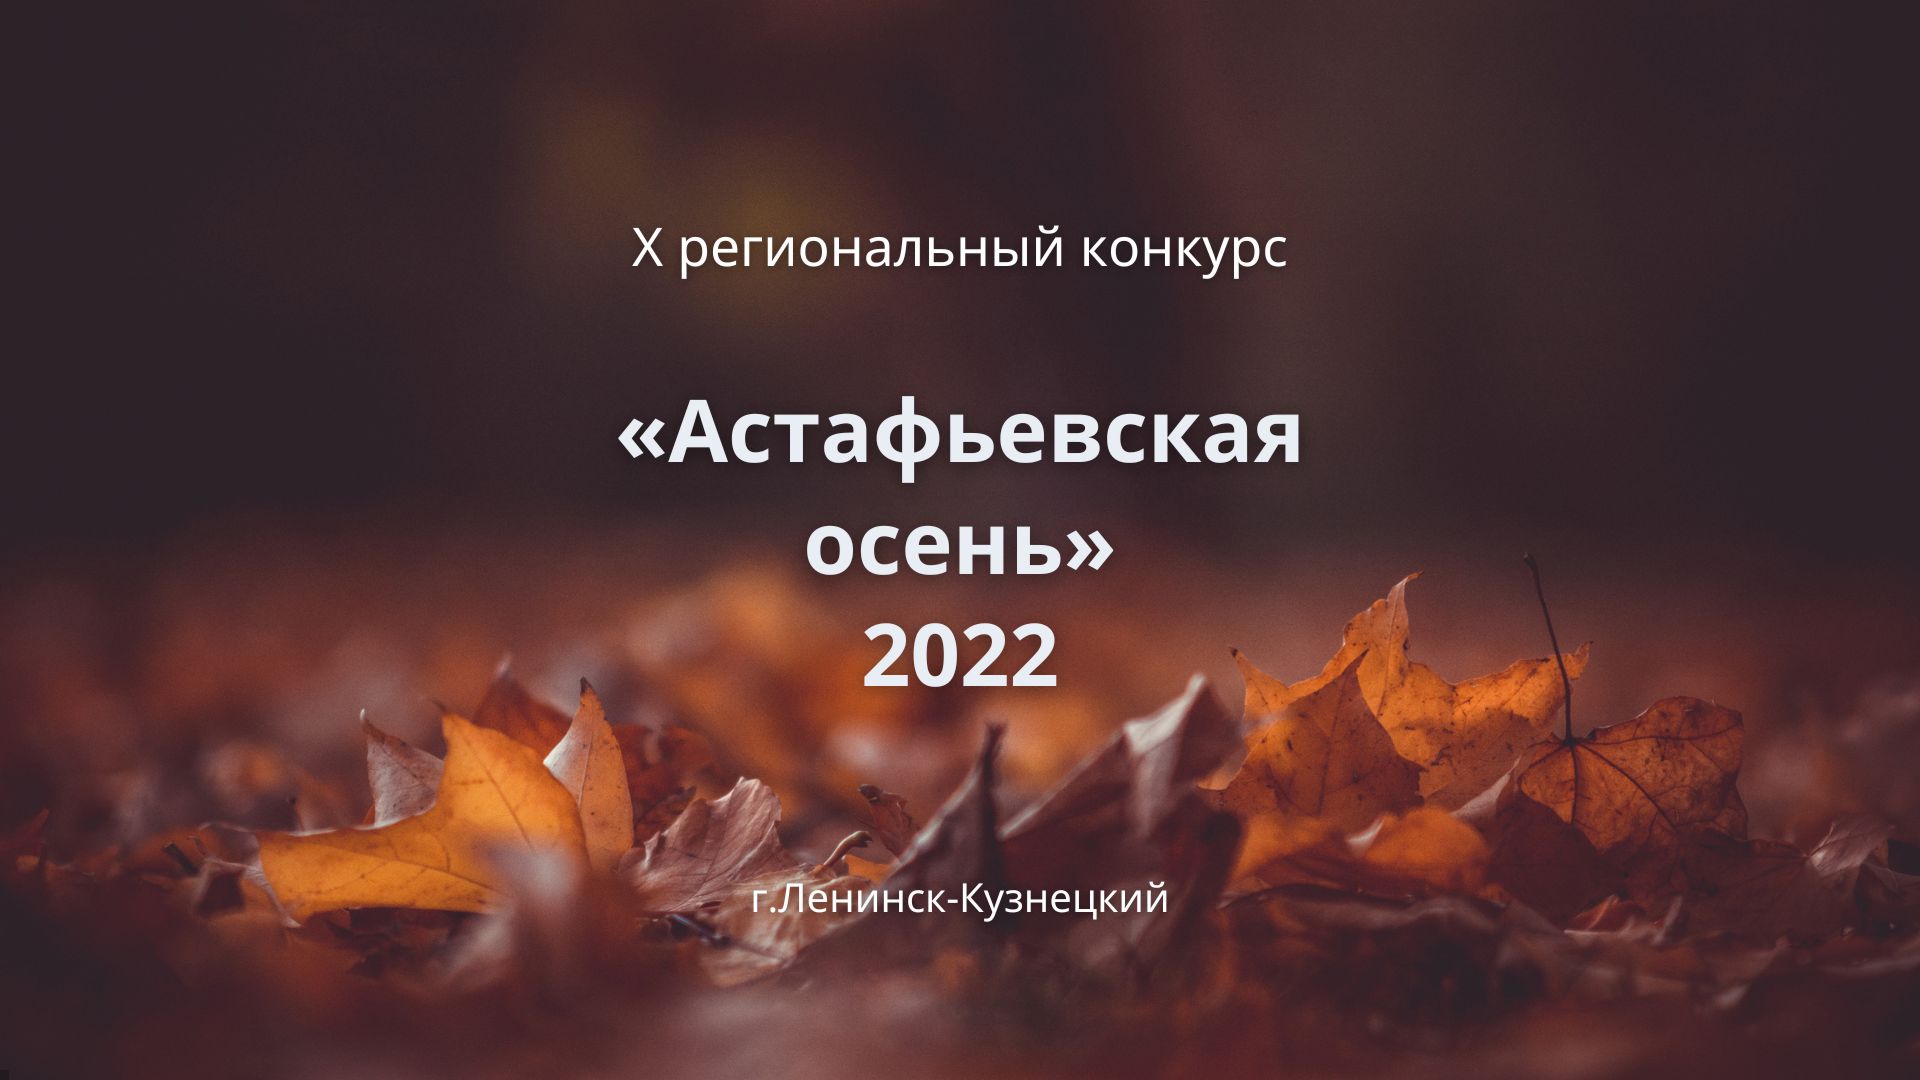 Астафьевская осень 2022